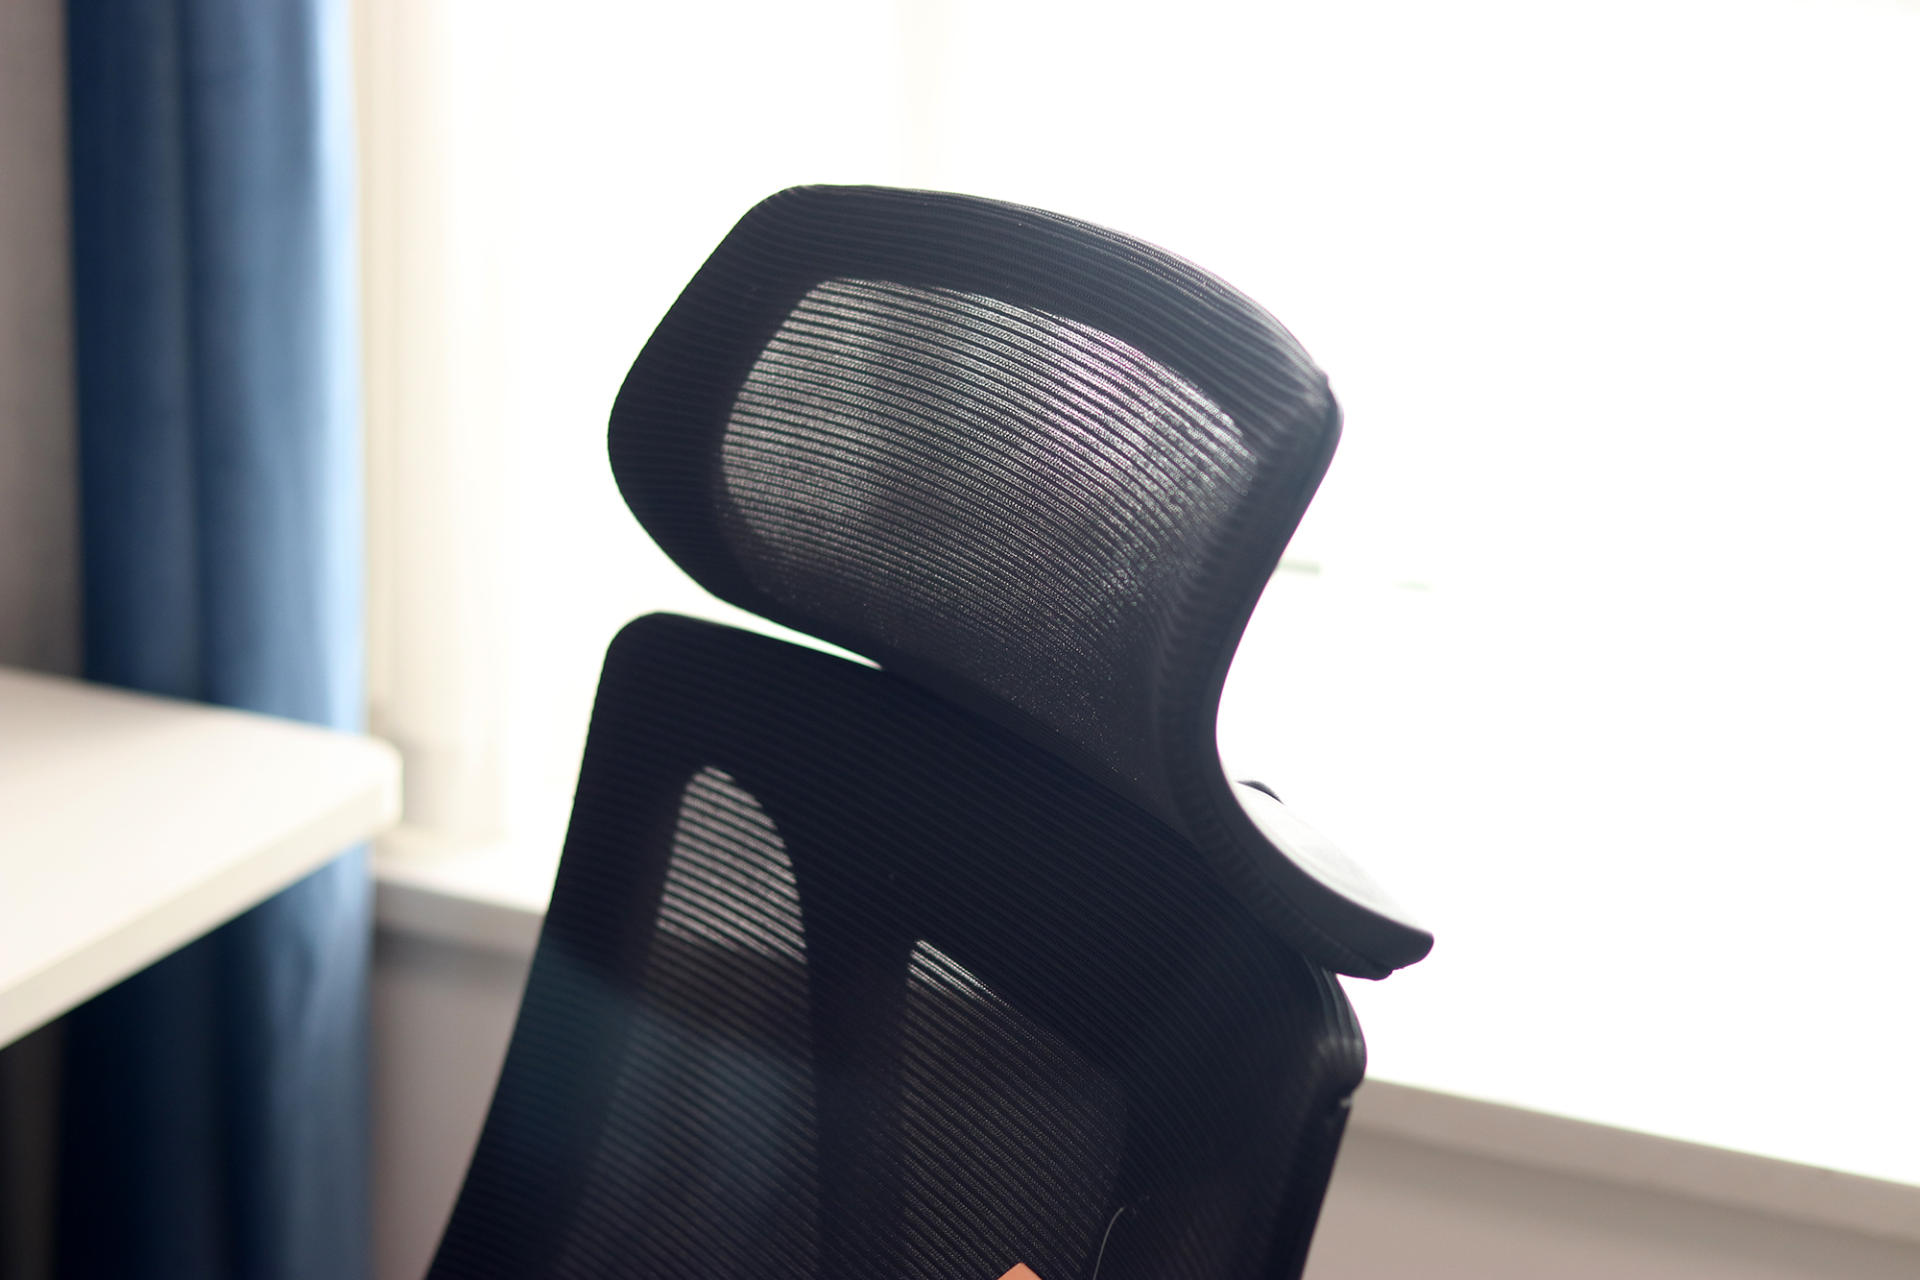 职员椅也能享受坐感：宝华贝轩仿生龙骨J156A办公椅体验